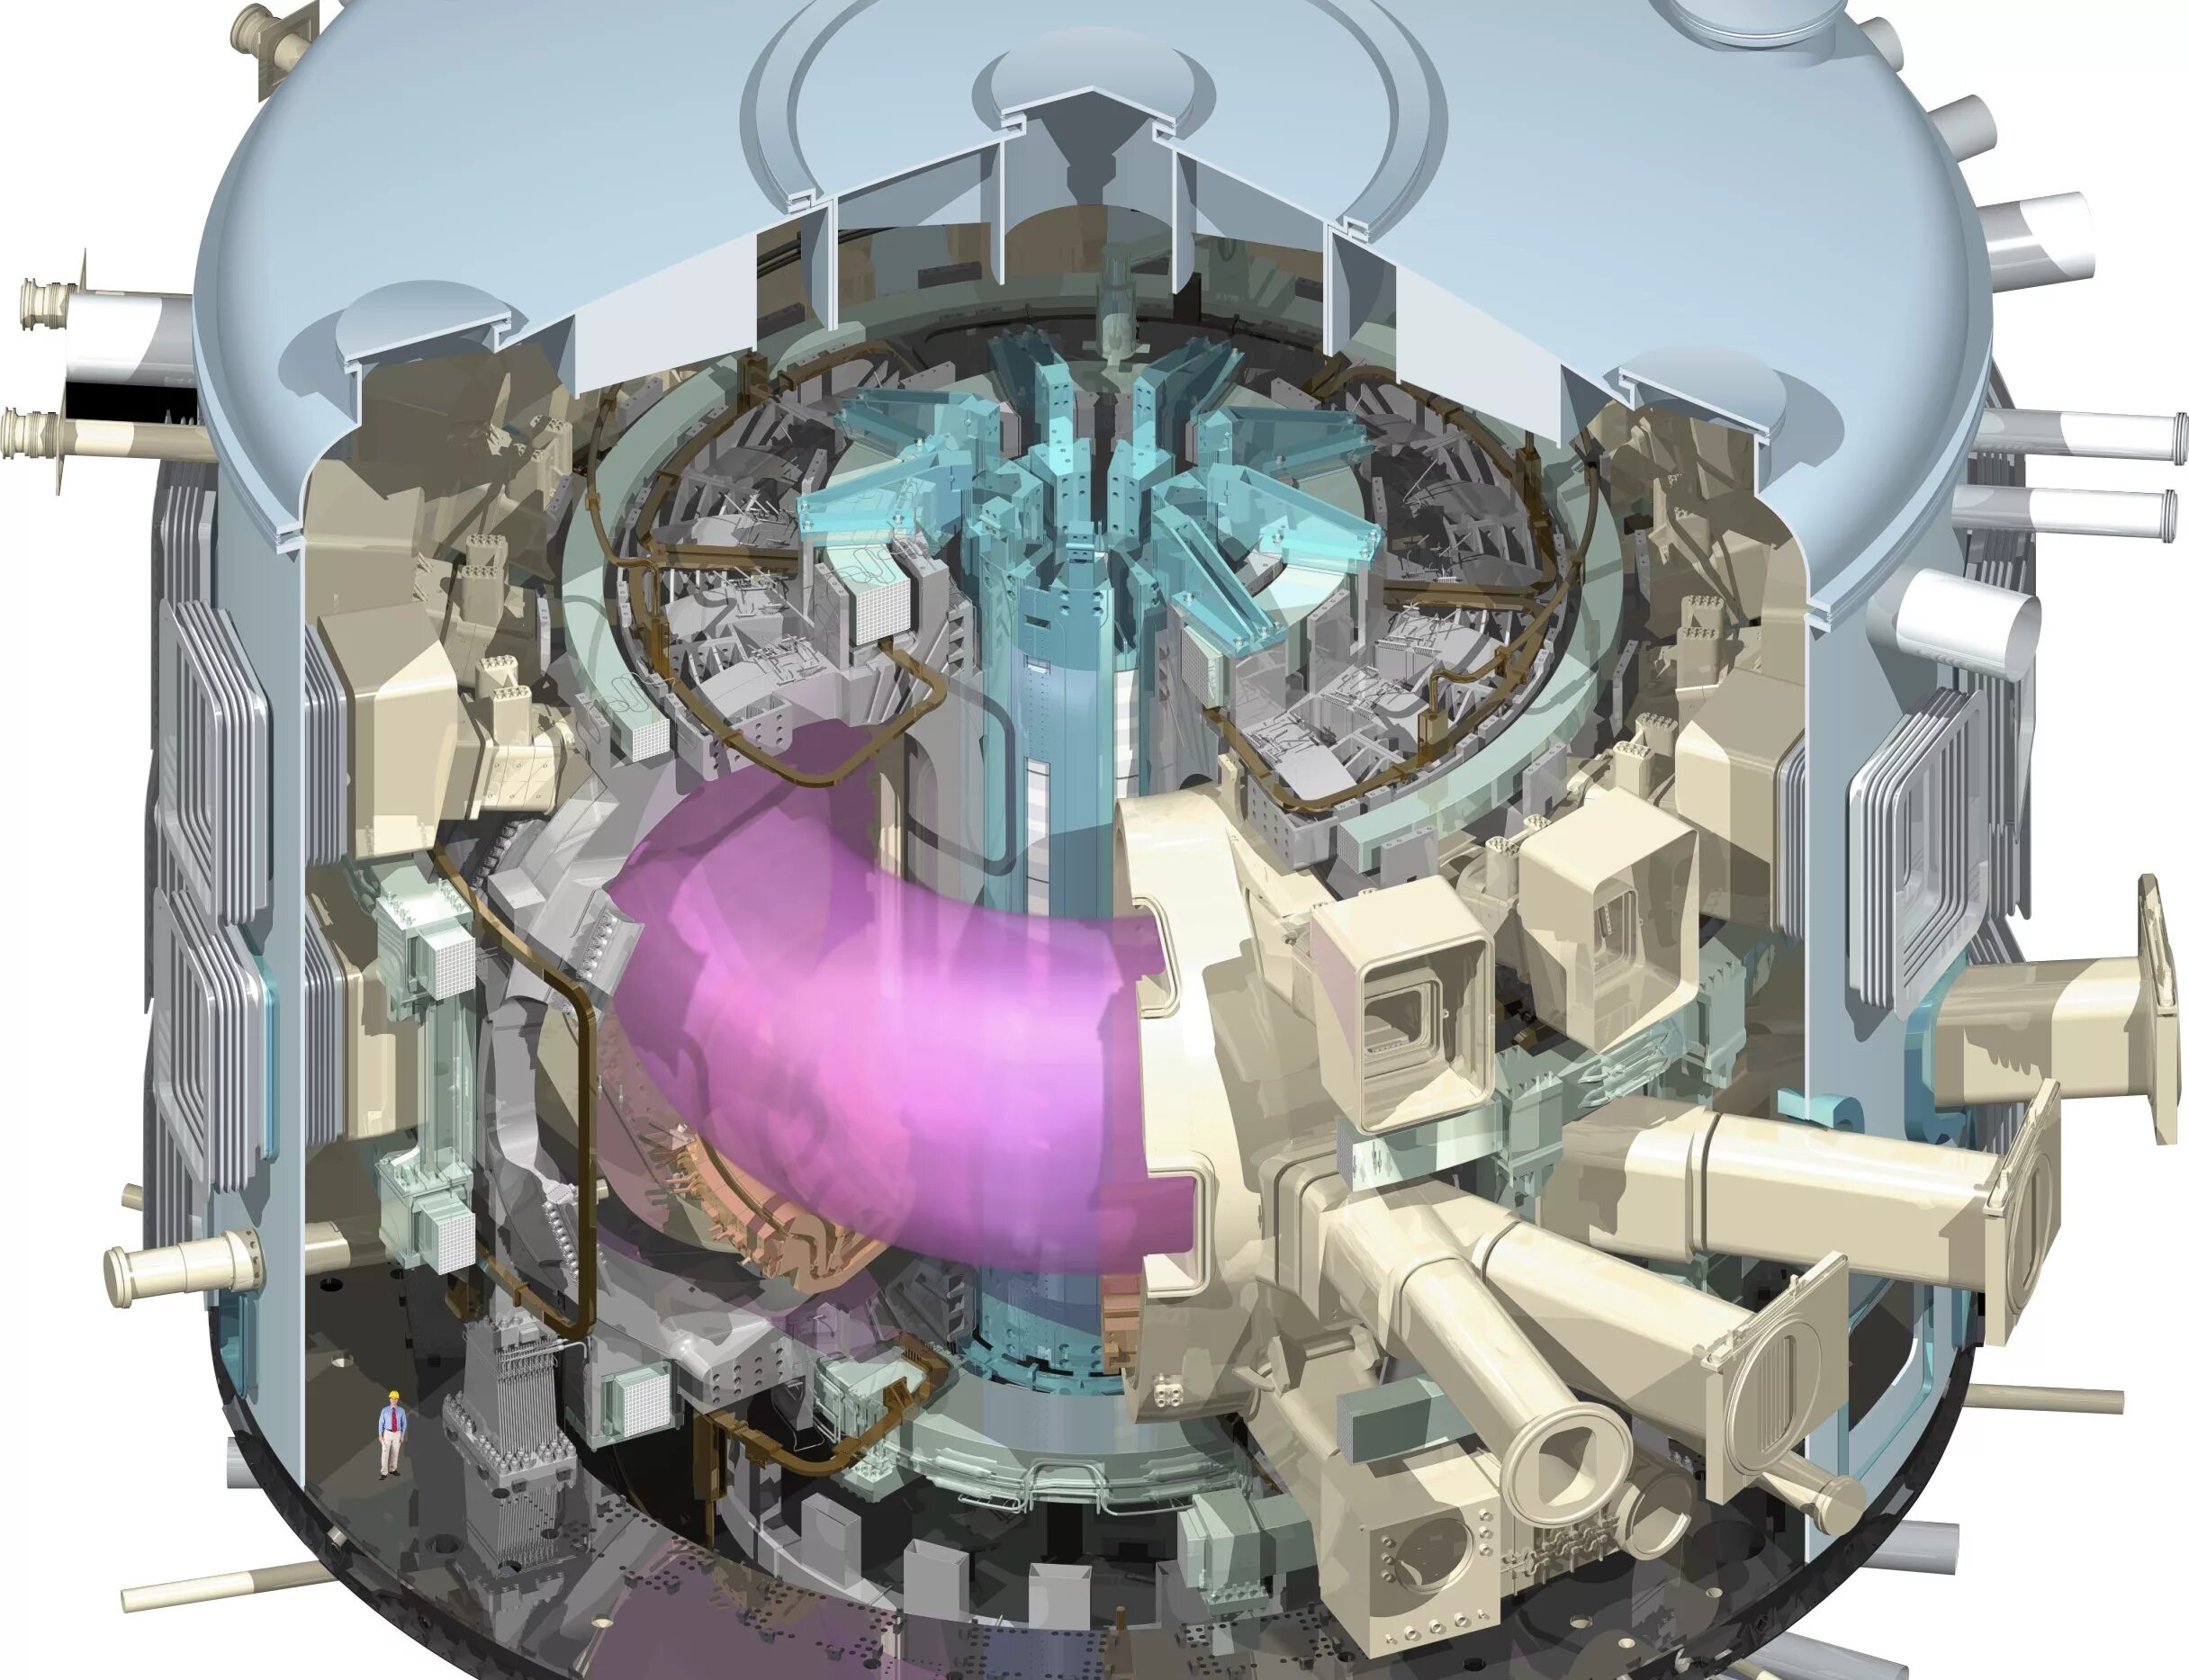 Генератор термоядерного синтеза planet crafter. Токамак ИТЭР. Ядерный реактор токамак. ITER термоядерный реактор. ИТЭР Международный термоядерный экспериментальный реактор.